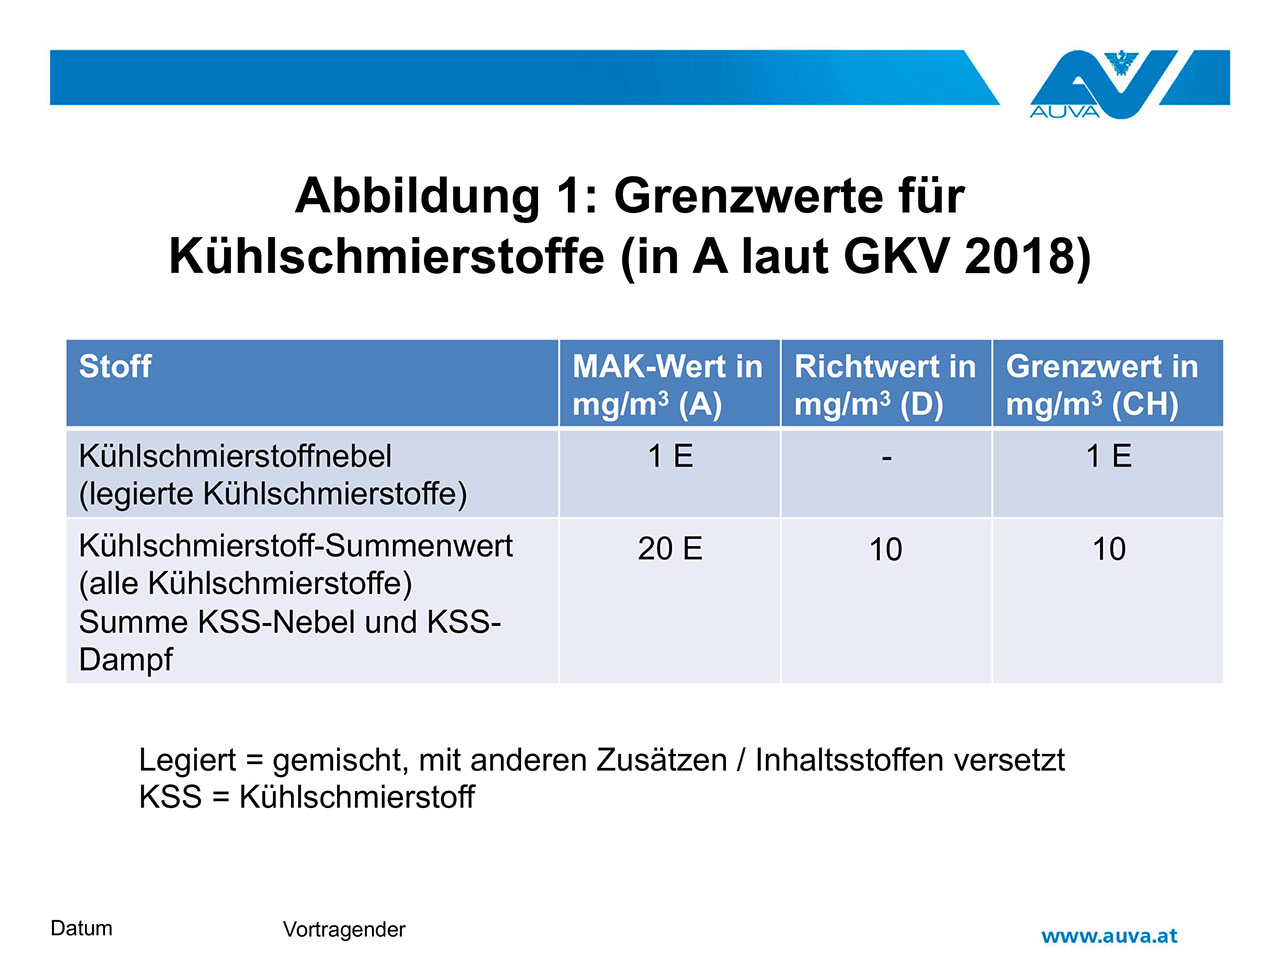 Abbildung 1: Grenzwerte für Kühlschmierstoffe (in A laut GKV 2018)